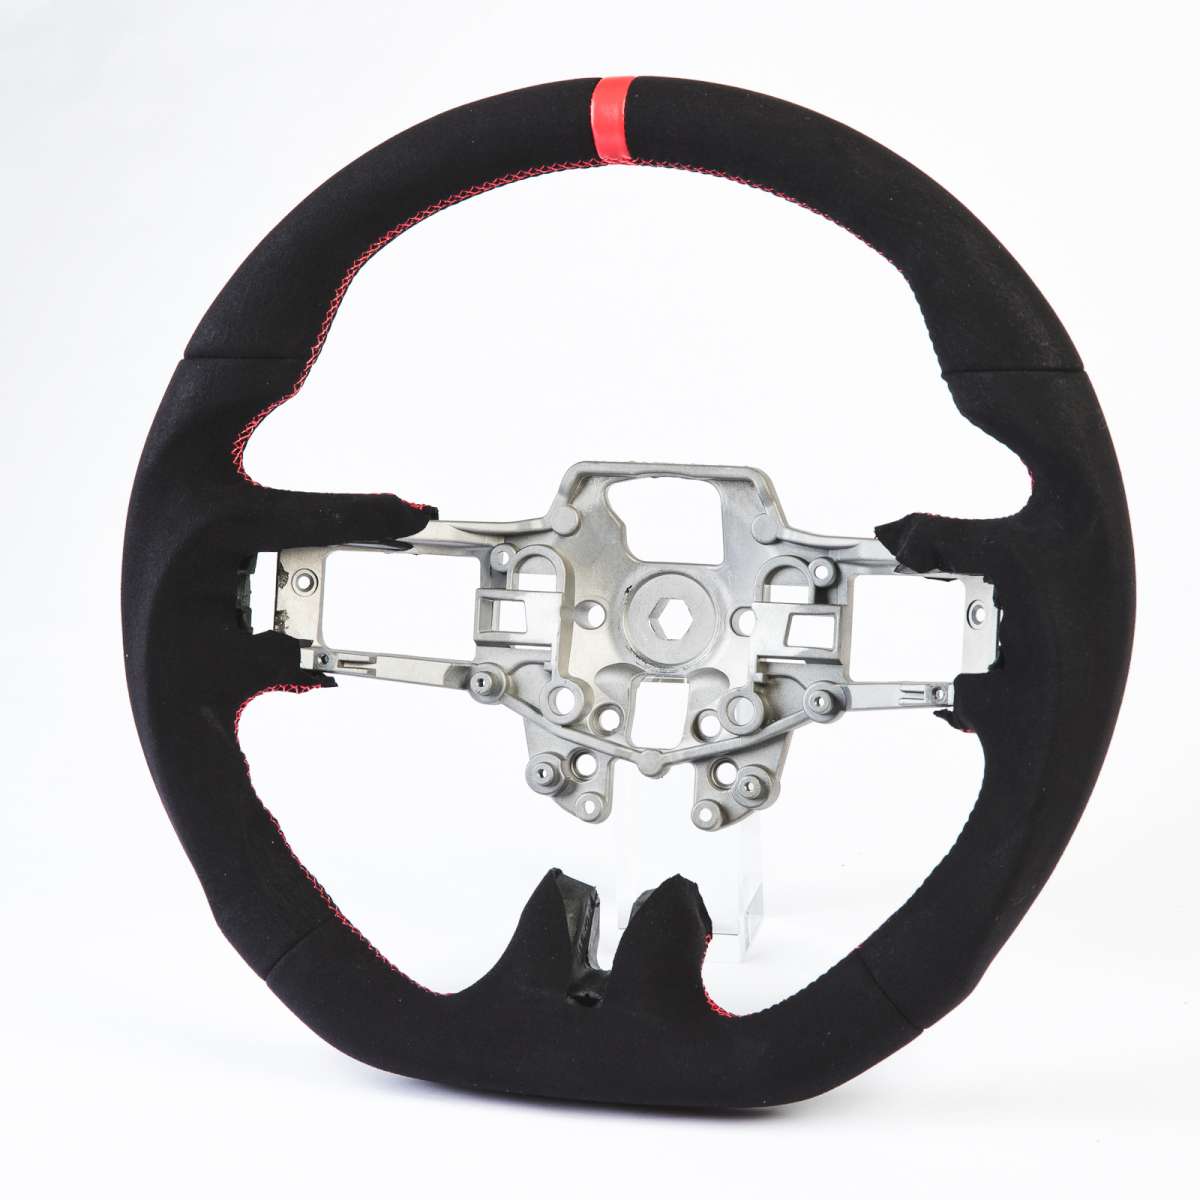 フォード用 マスタング エコブースト 5.0GT用 ステアリング ハンドル 赤い輪デザイン 本革スエード【___OCS】 ステアリング・ハンドル